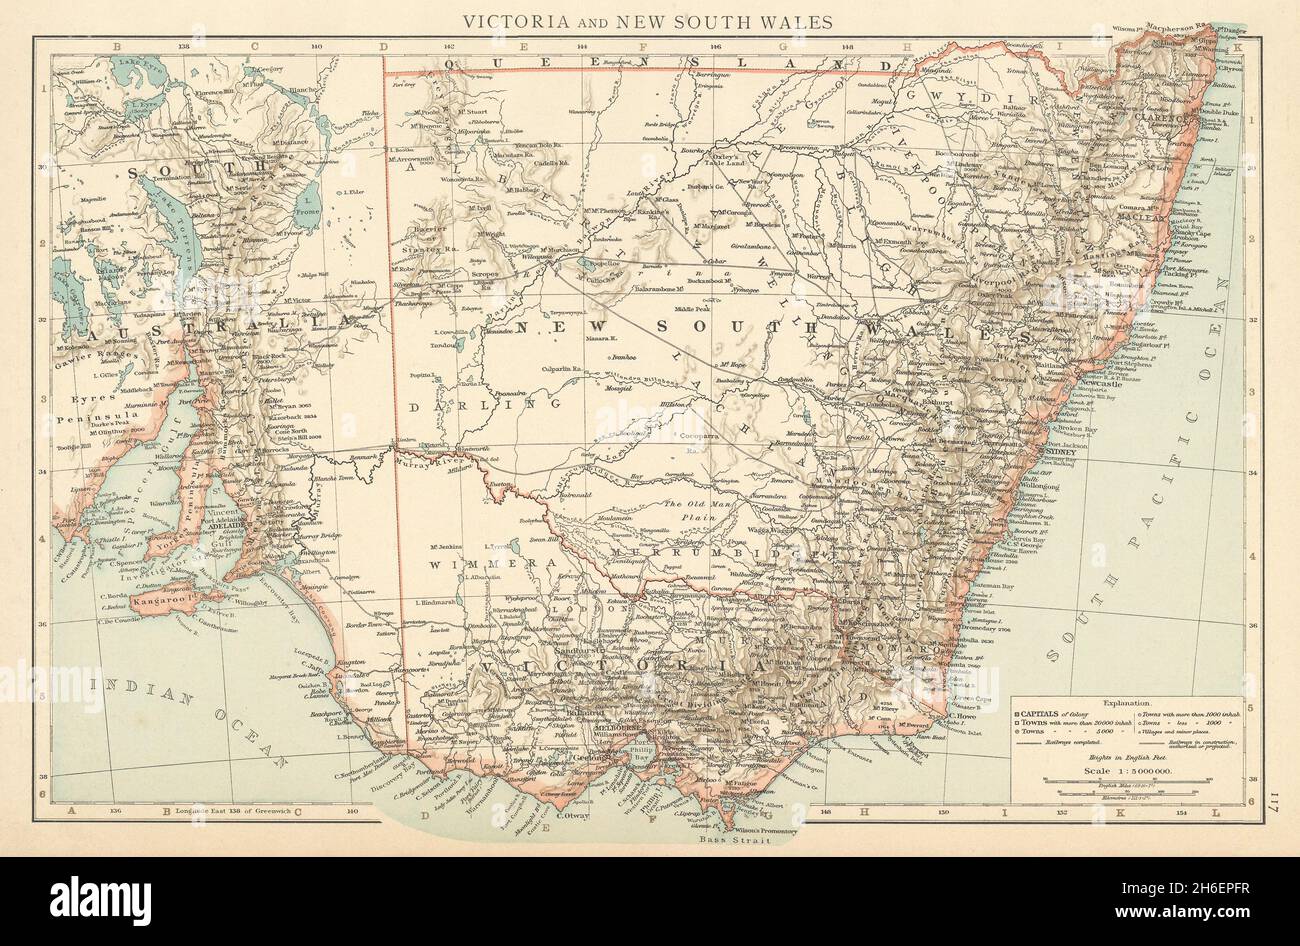 Victoria et Nouvelle-Galles du Sud.Les chemins de fer complètent et planifient la carte des HORAIRES de l'Australie en 1895 Banque D'Images